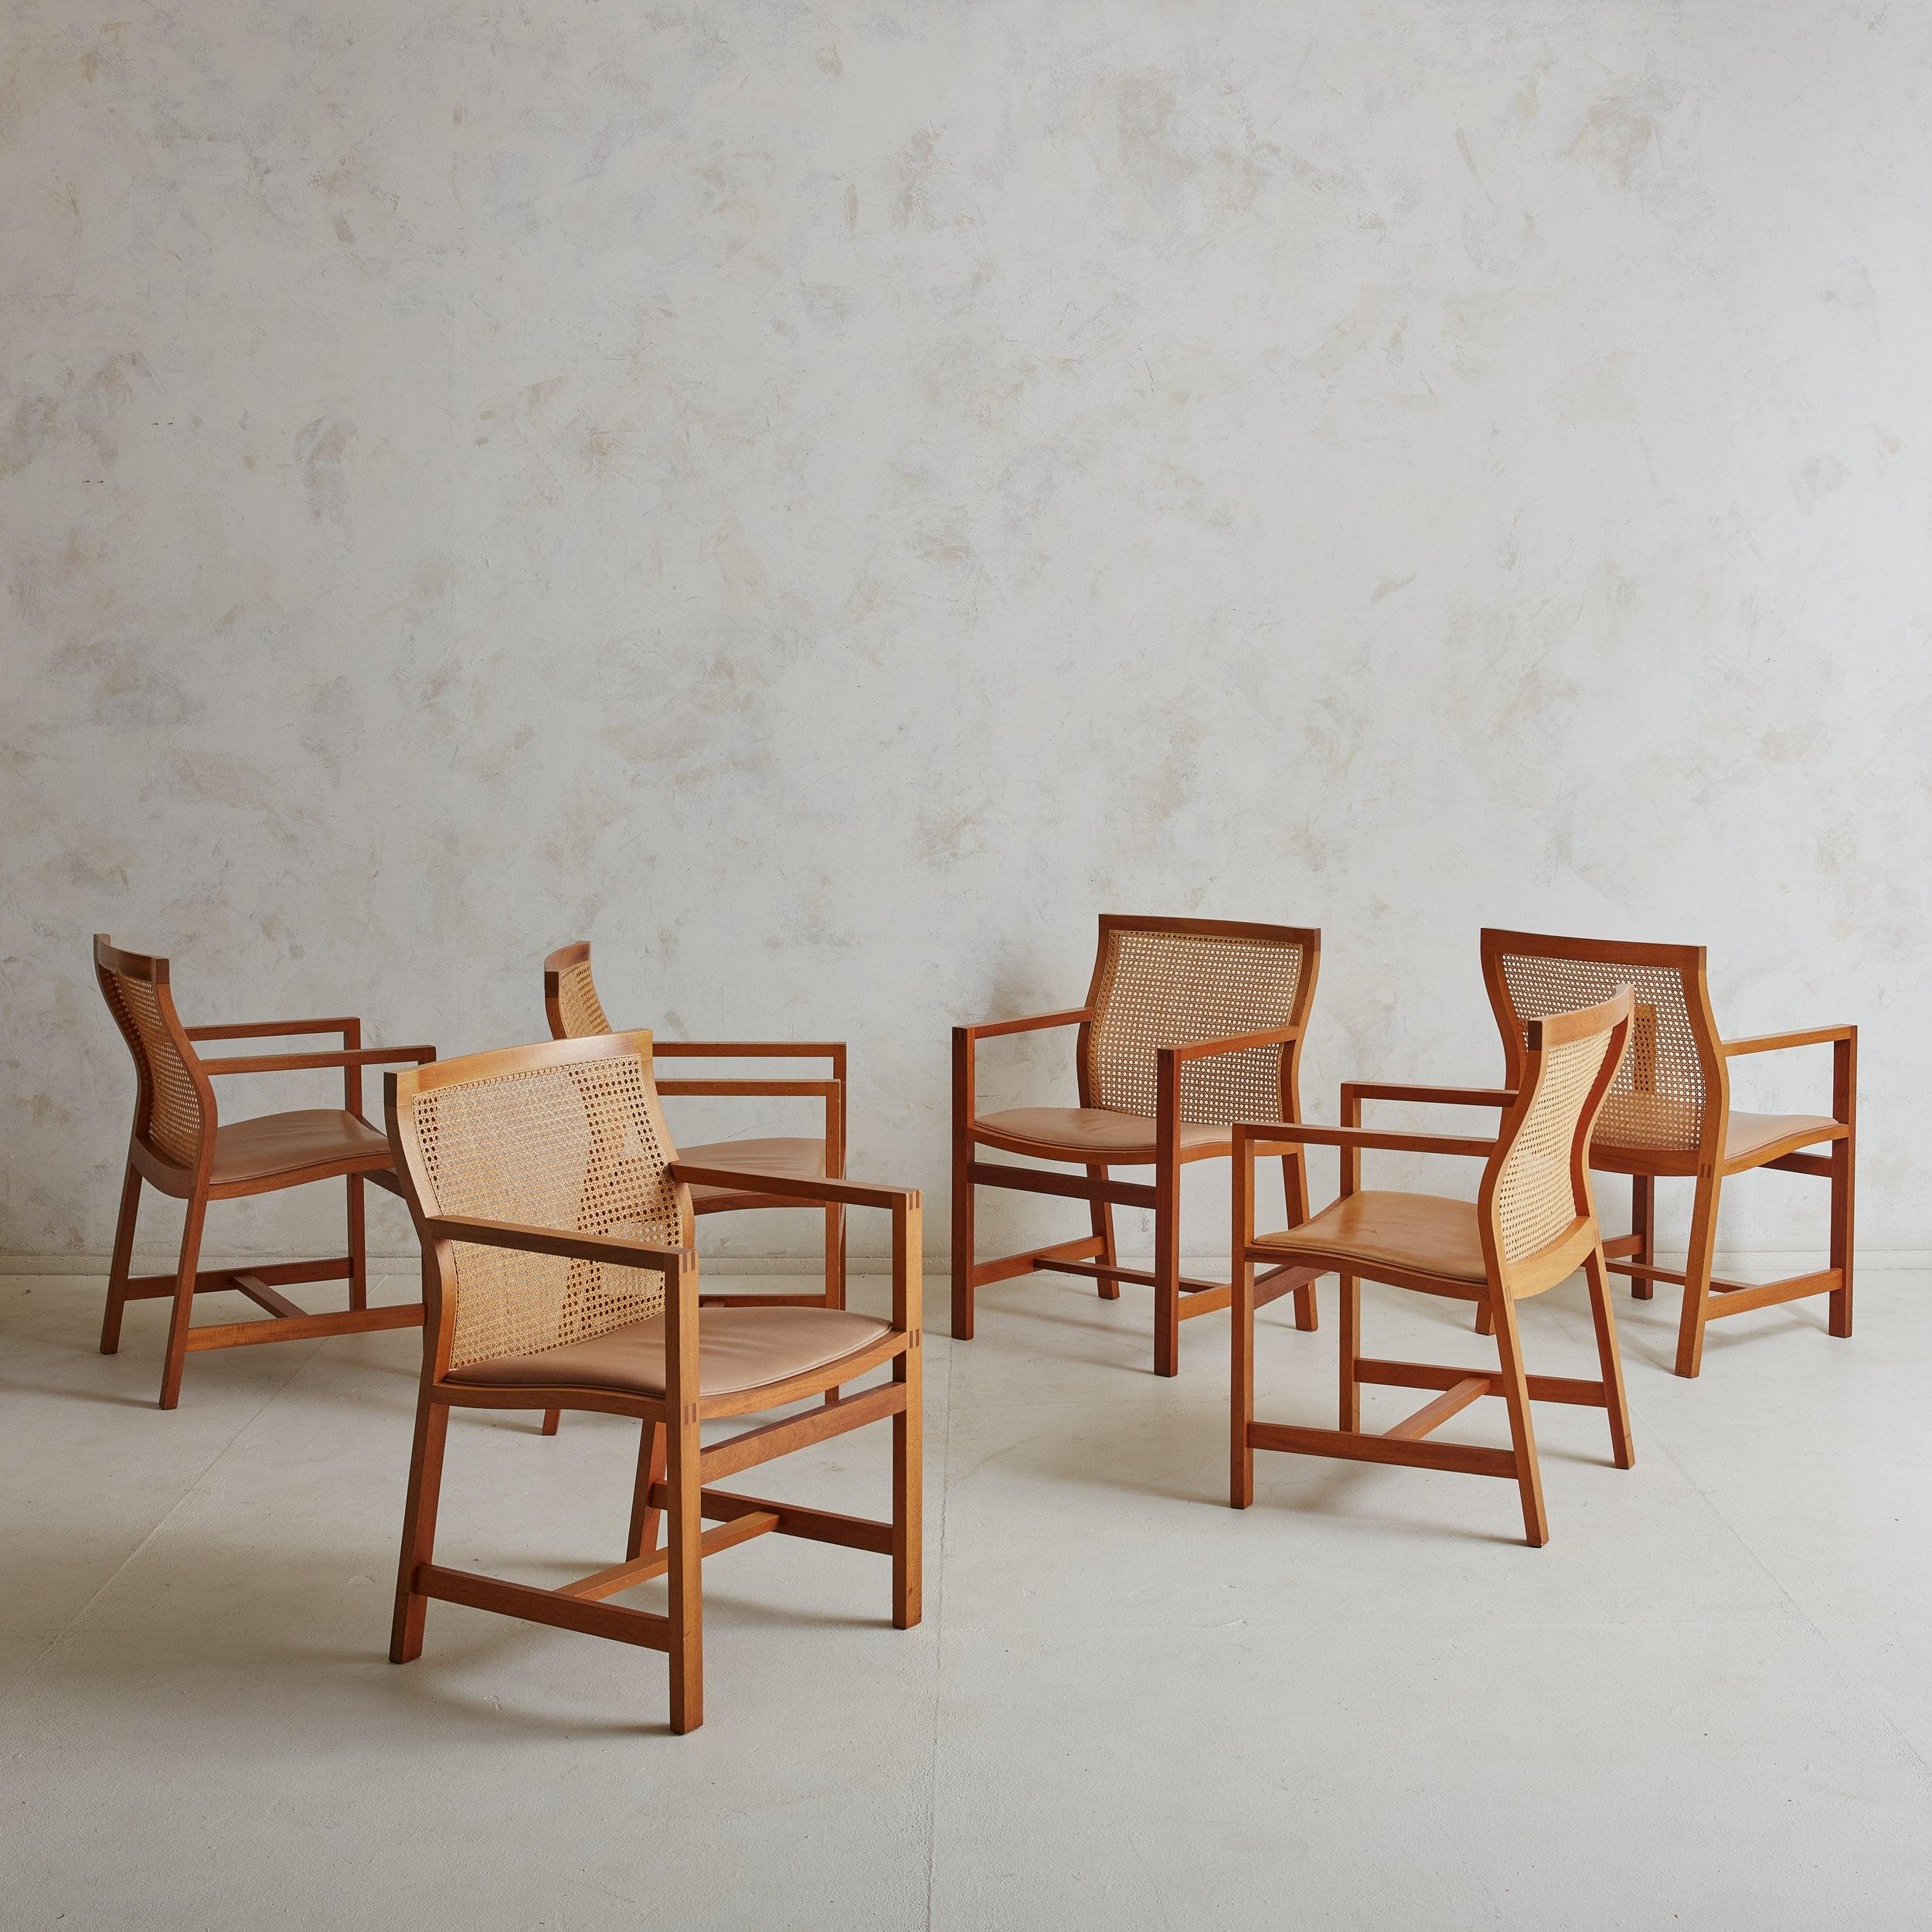 Ensemble de 6 chaises de salle à manger danoises modernes en bois de canne et de cerisier, conçues par Rud Thygesen et Johnny Sorensen pour Botium dans les années 1980. Ces chaises de salle à manger de facture exceptionnelle sont constituées d'une